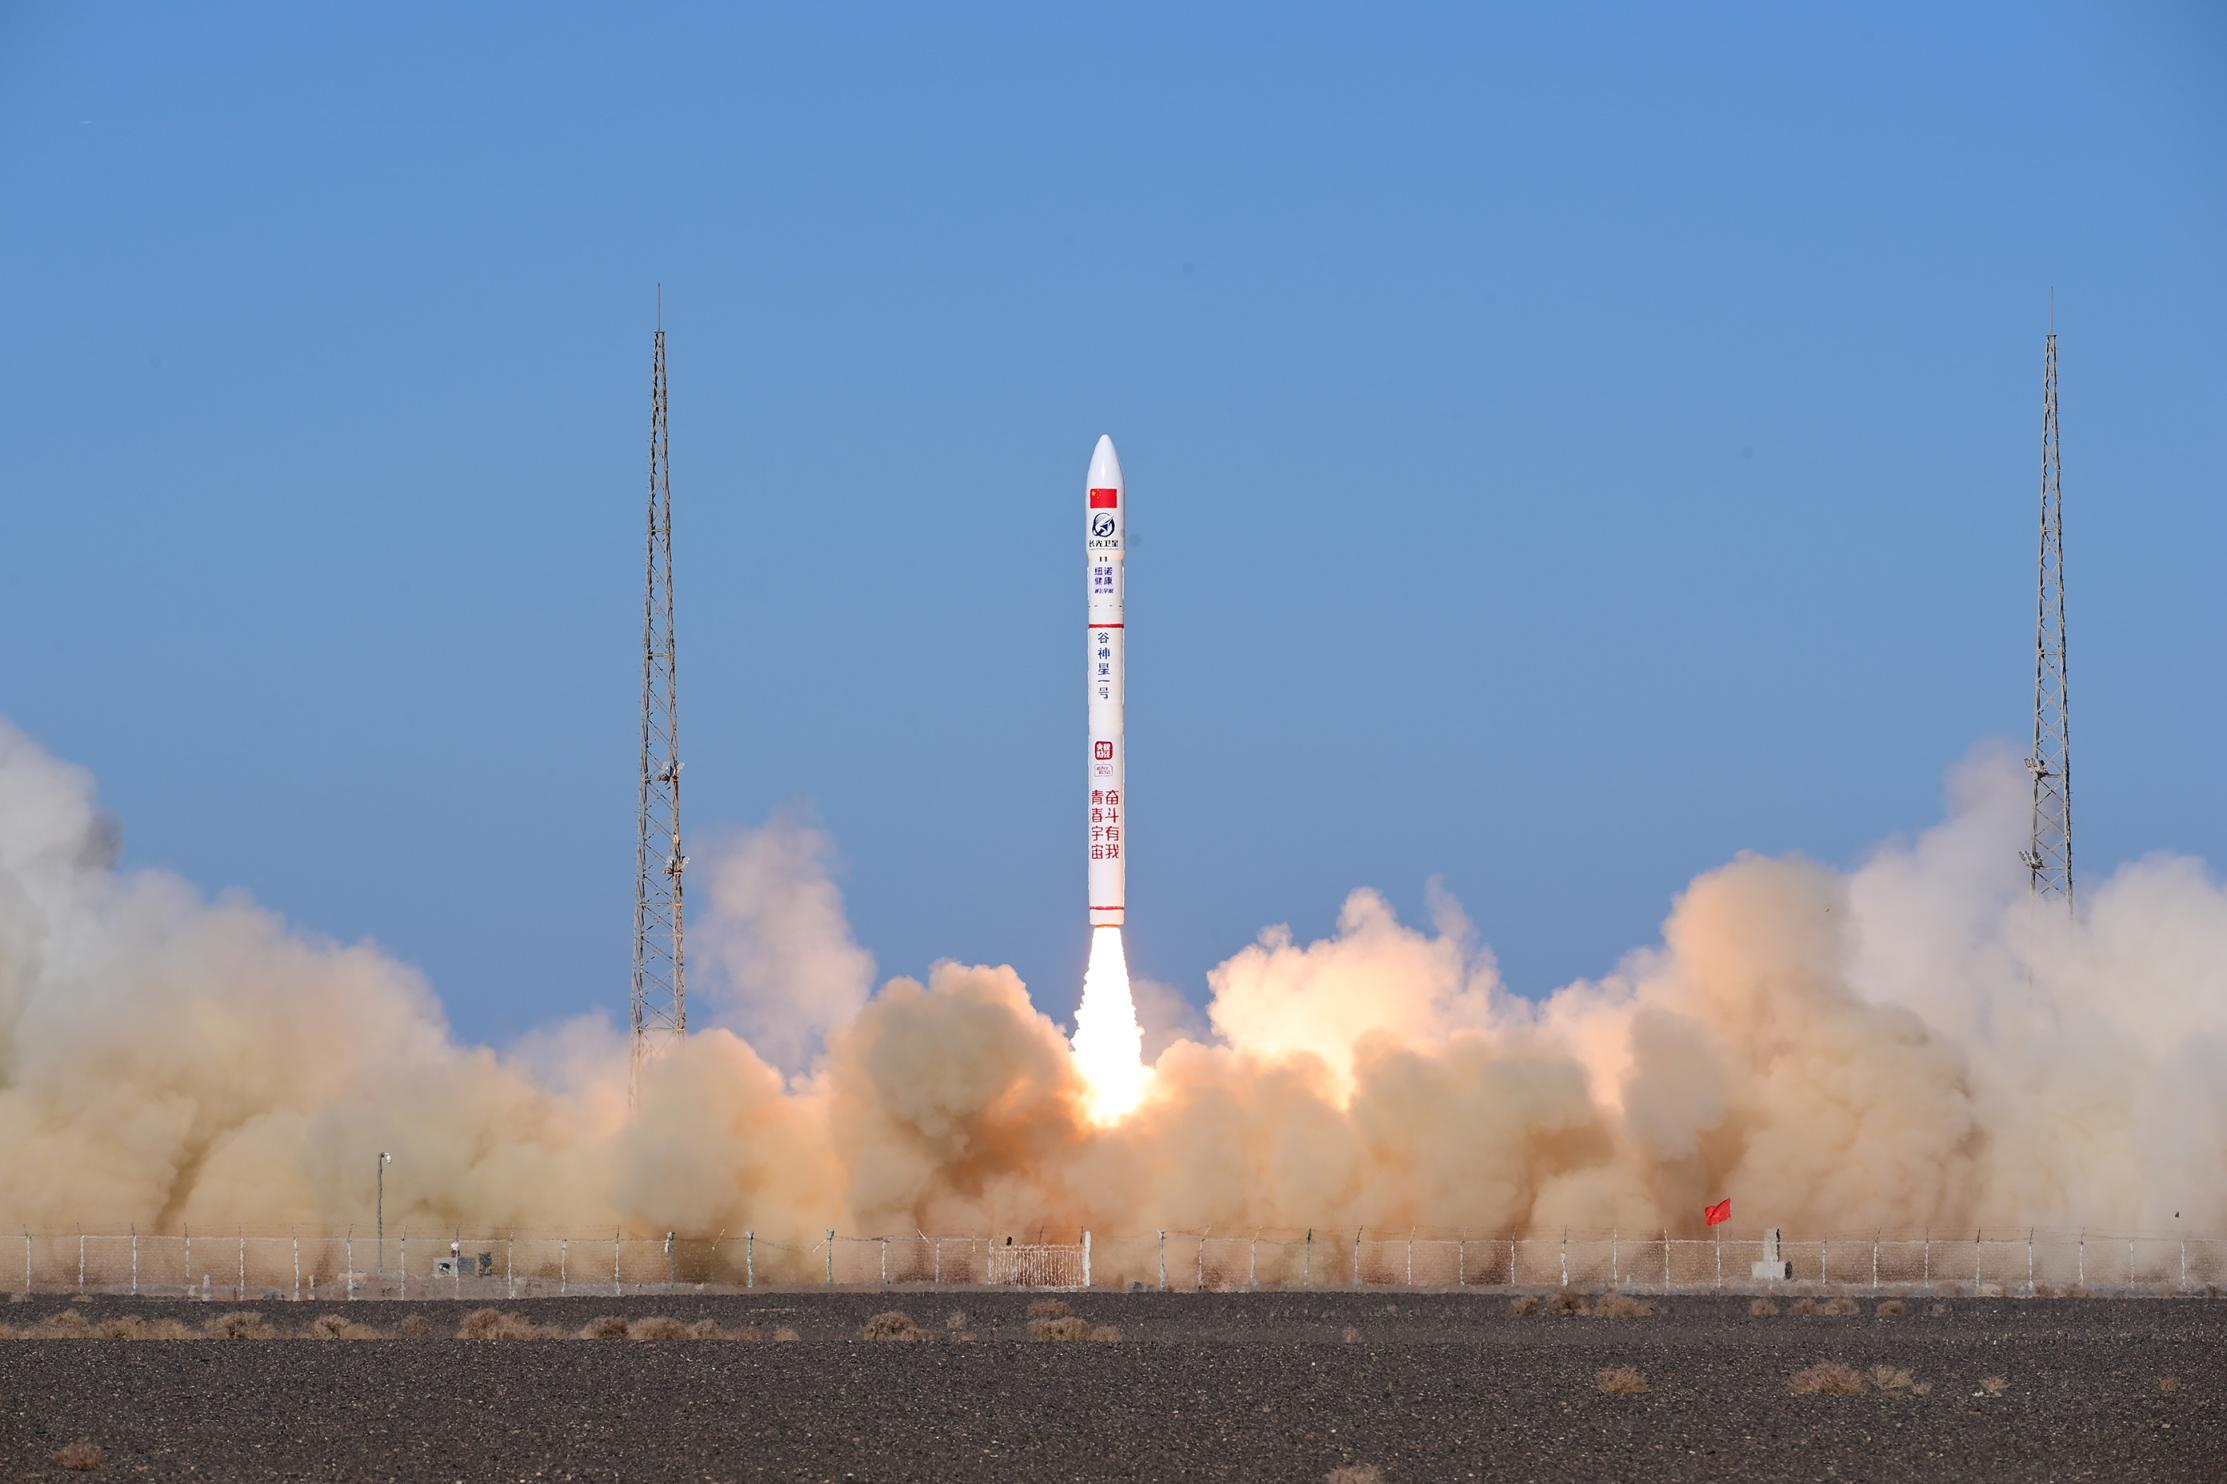 这次一箭五星成功发射刷新了中国民营商业火箭新纪录